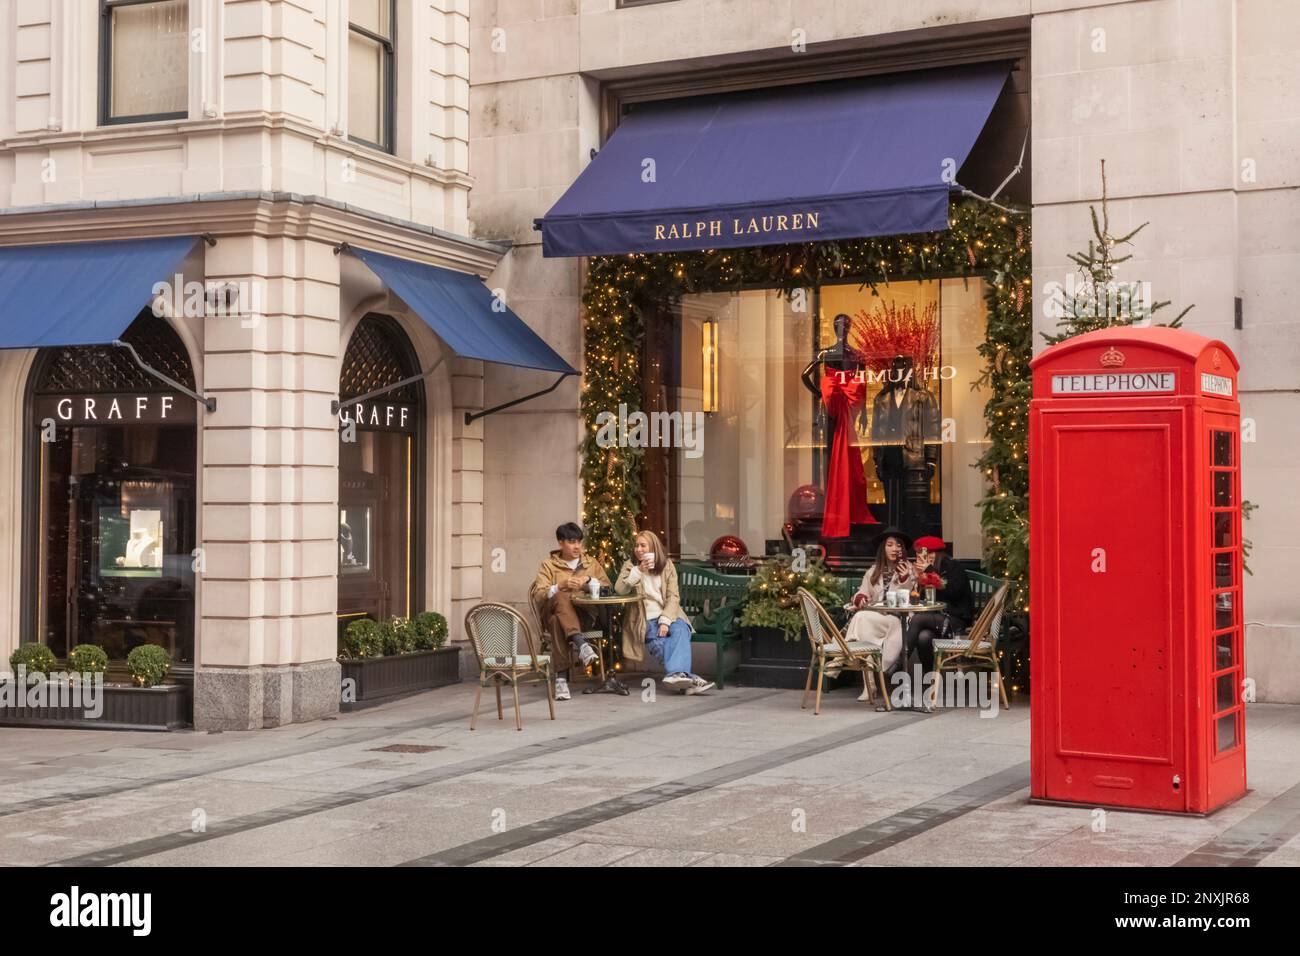 Angleterre, Londres, Piccadilly, New Bond Street, vue extérieure du magasin Ralph Lauren avec décorations de Noël et coffret téléphonique rouge traditionnel Banque D'Images